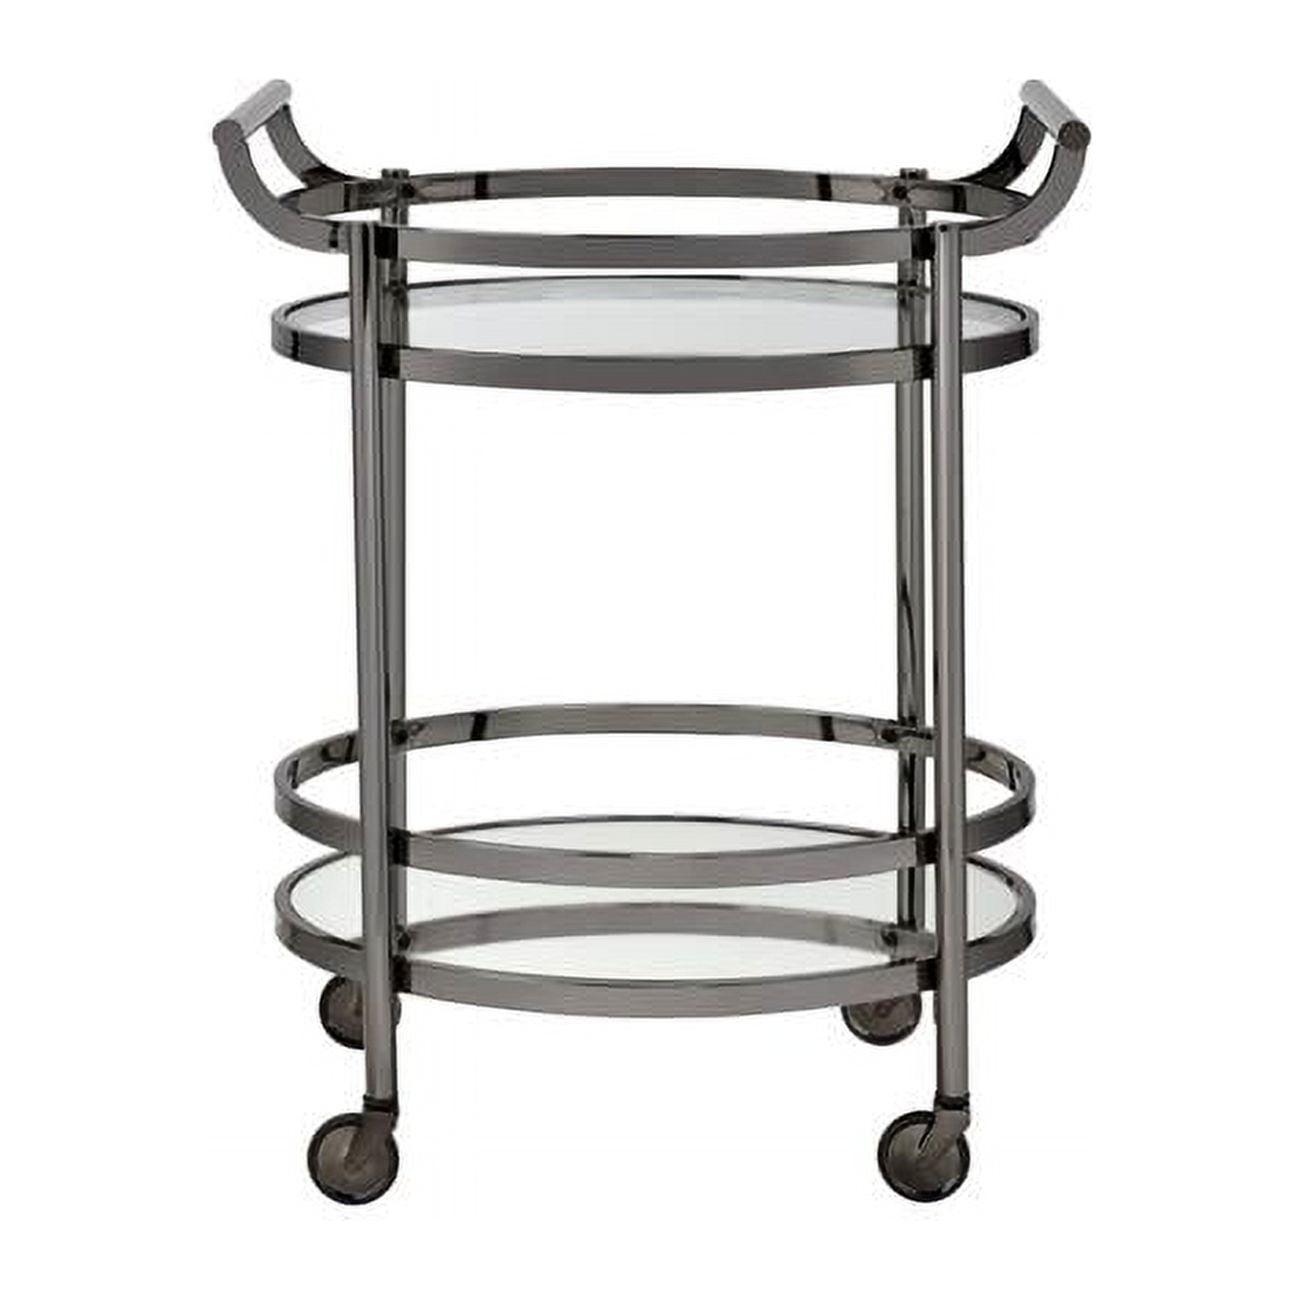 Elegant Oval Black Nickel Metal Serving Cart with Glass Shelves